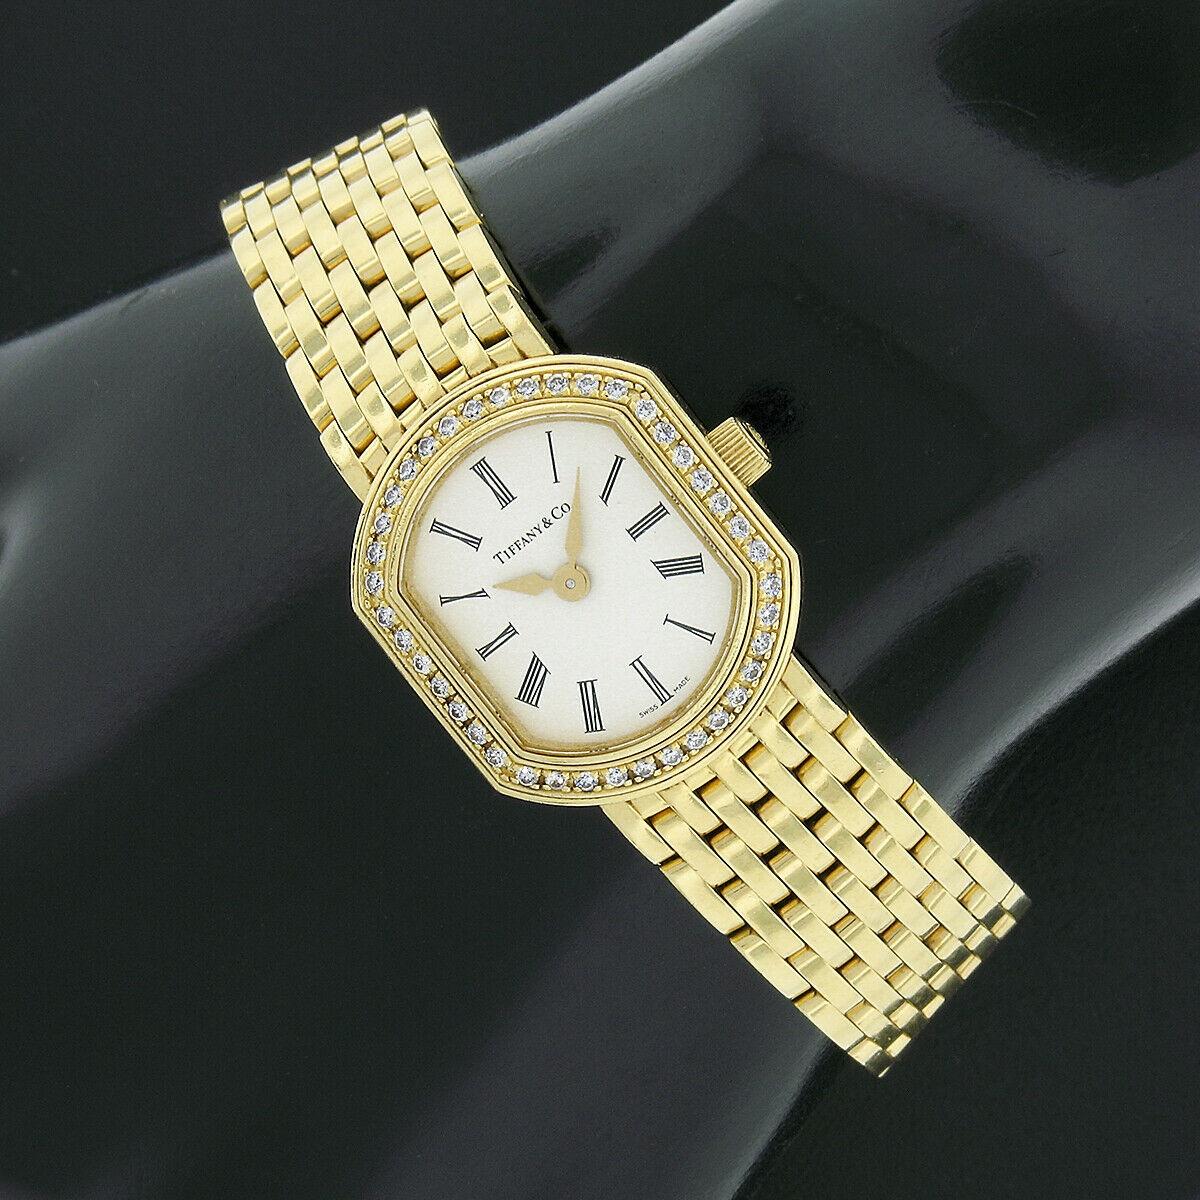 Cette élégante pièce de collection pour dames de Tiffany & Co. La montre-bracelet Resonator de Mark Coupe est dotée d'un boîtier de forme coussin en or jaune 18 carats massif de 21 mm, orné d'une lunette en diamants d'une qualité exceptionnelle. La